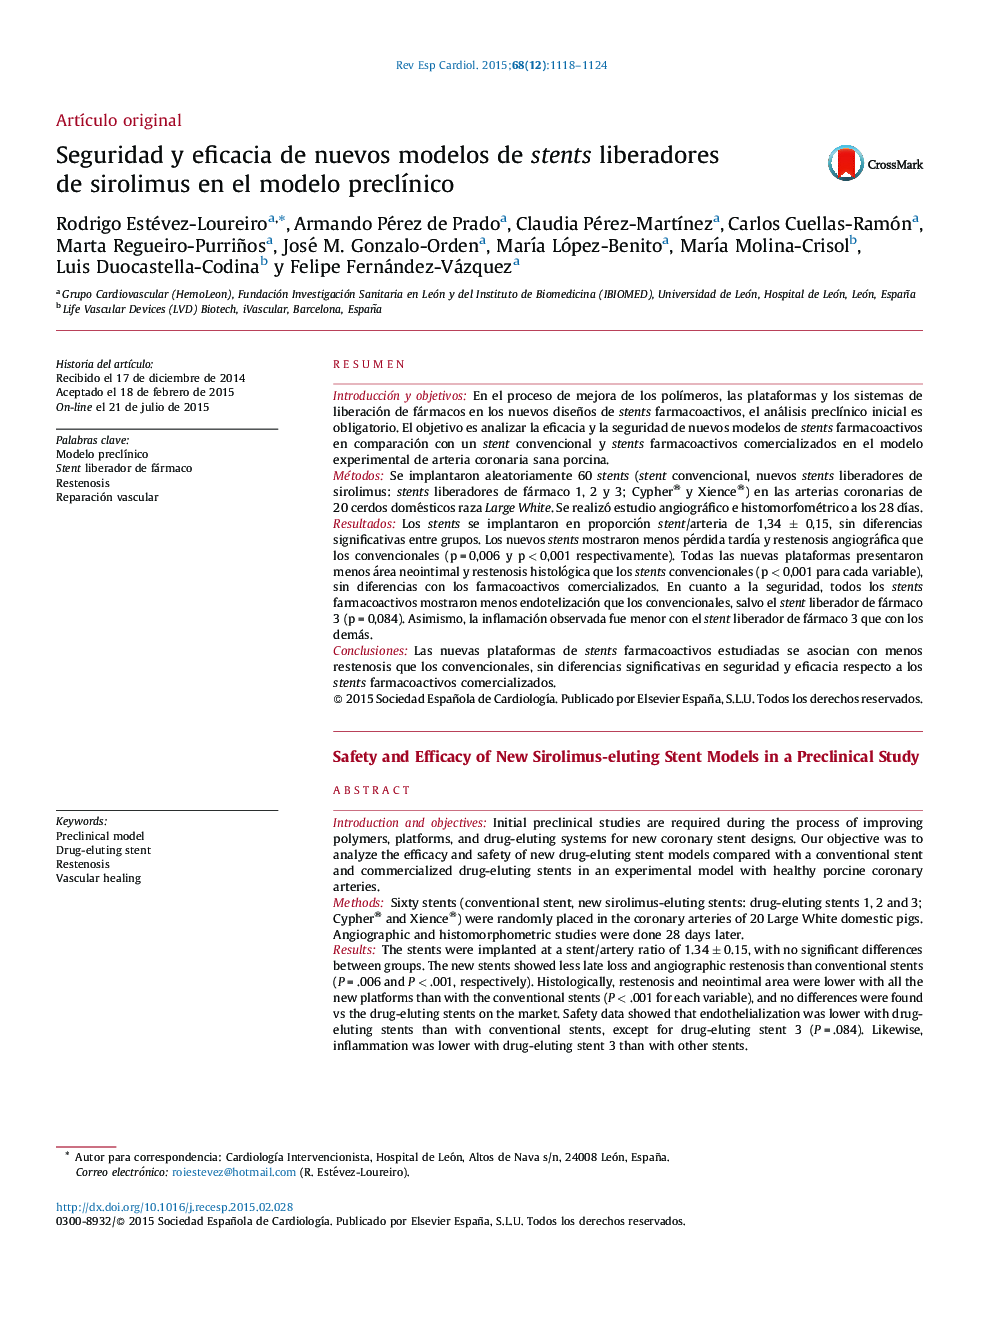 Seguridad y eficacia de nuevos modelos de stents liberadores de sirolimus en el modelo preclÃ­nico